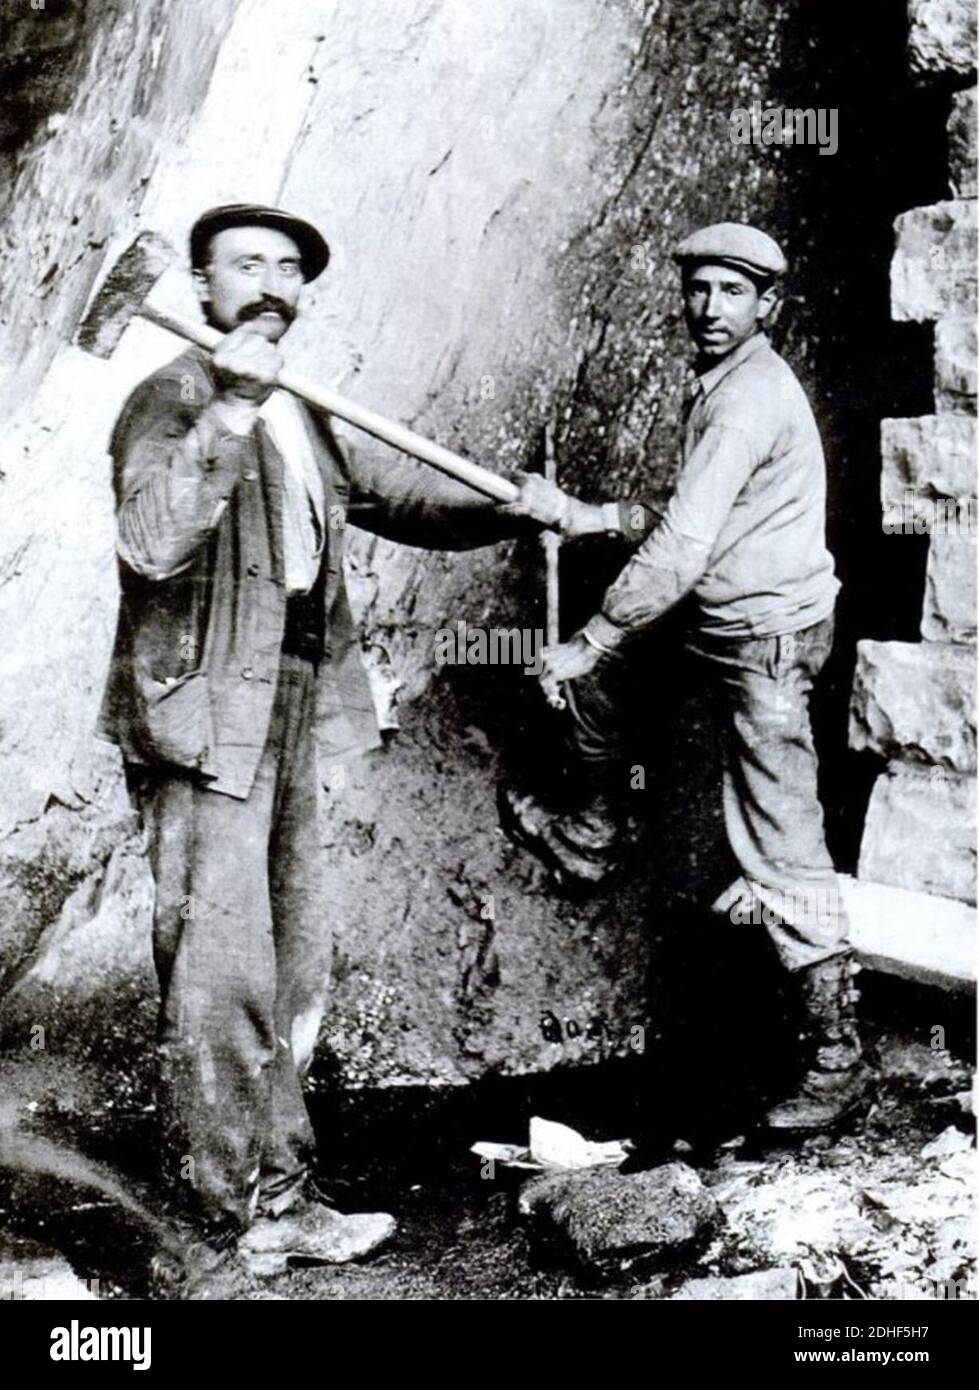 La construction de la ligne 163a Betrix-Muno (1900-1914) - Battre un mine deblayer a l'aide d'une grue a vapeur et d'un decauville (Photo Louis Lenzen, barbier puis photographe a Betrix, Stock Photo